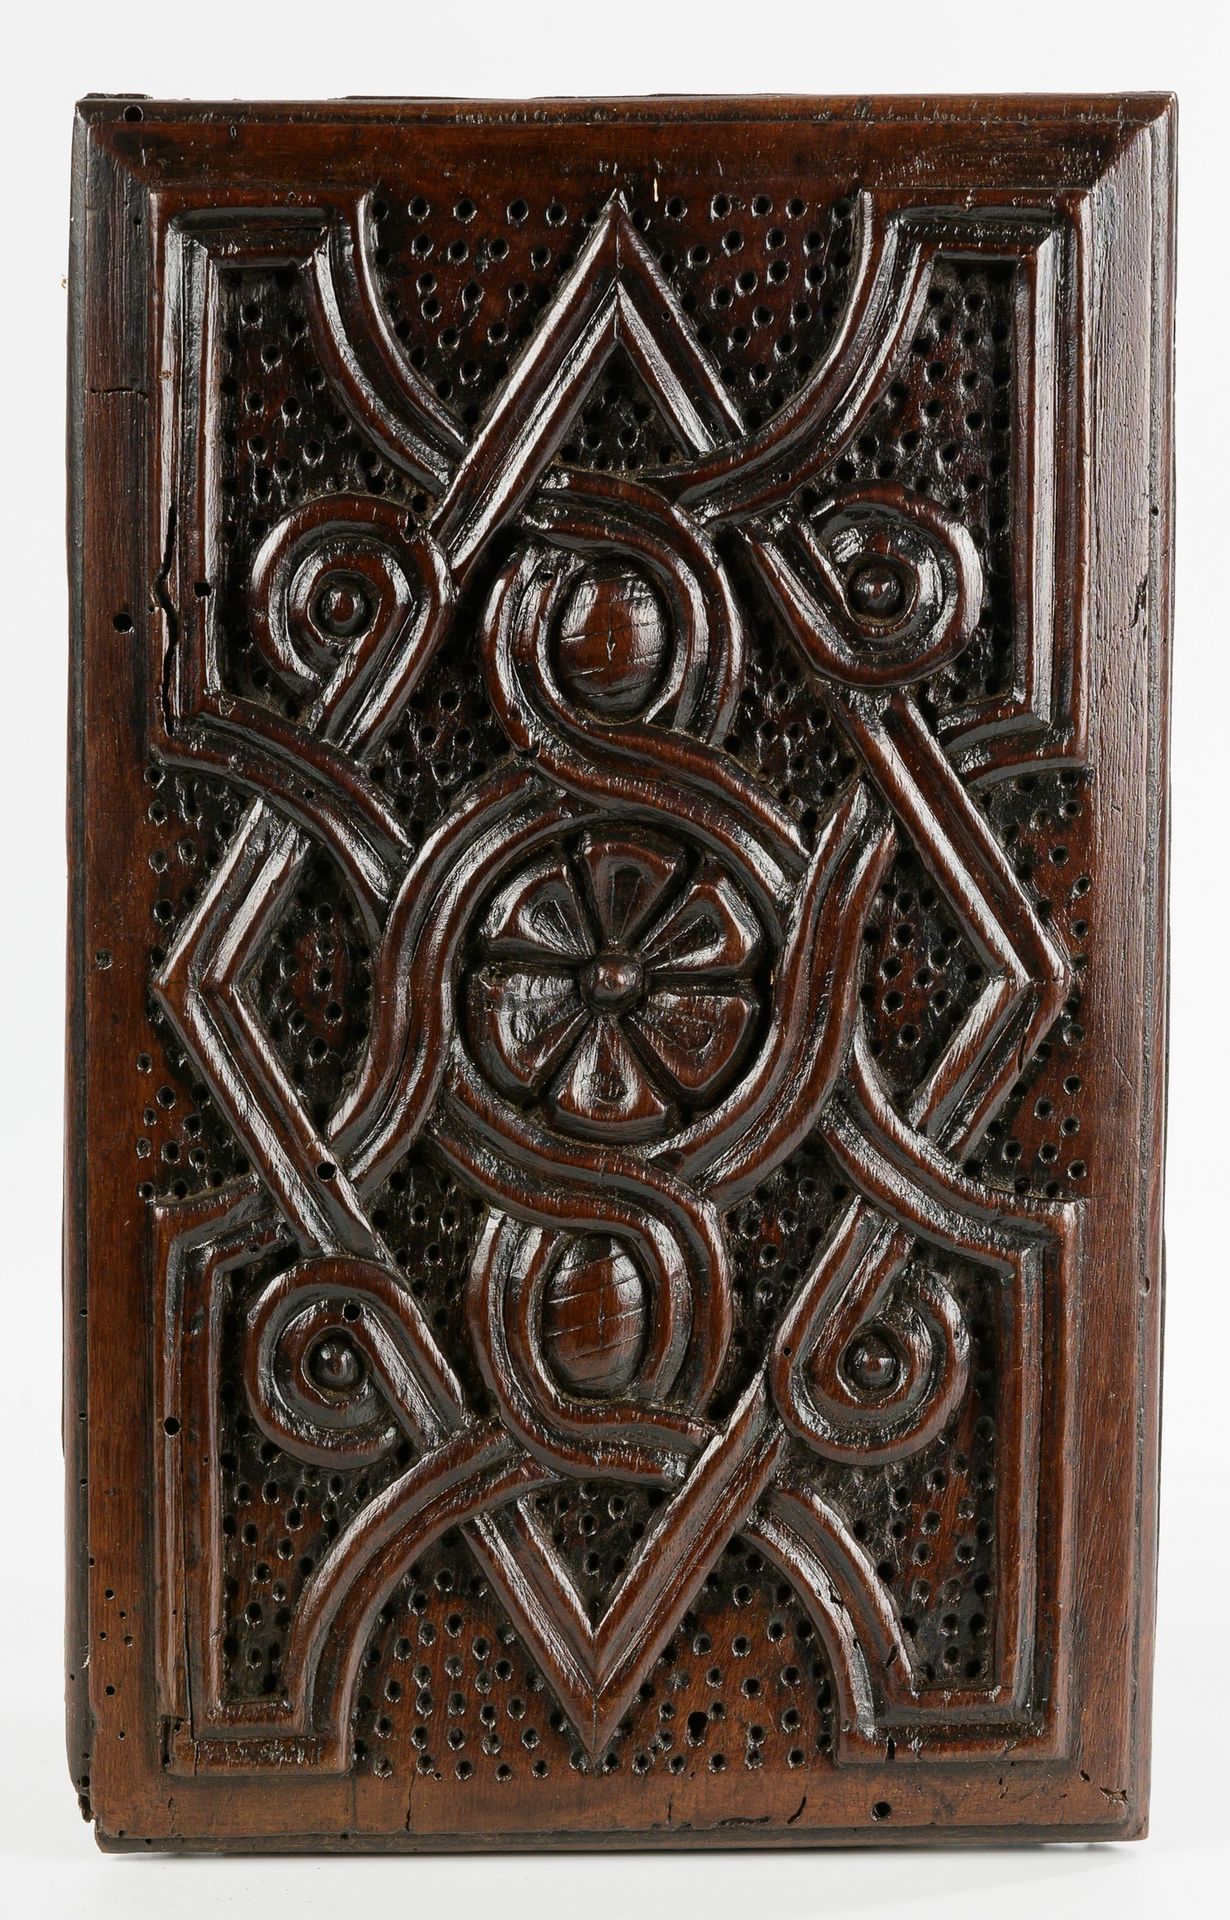 Null Pannello del bagagliaio

Legno.

XVI secolo

28 x 18 cm